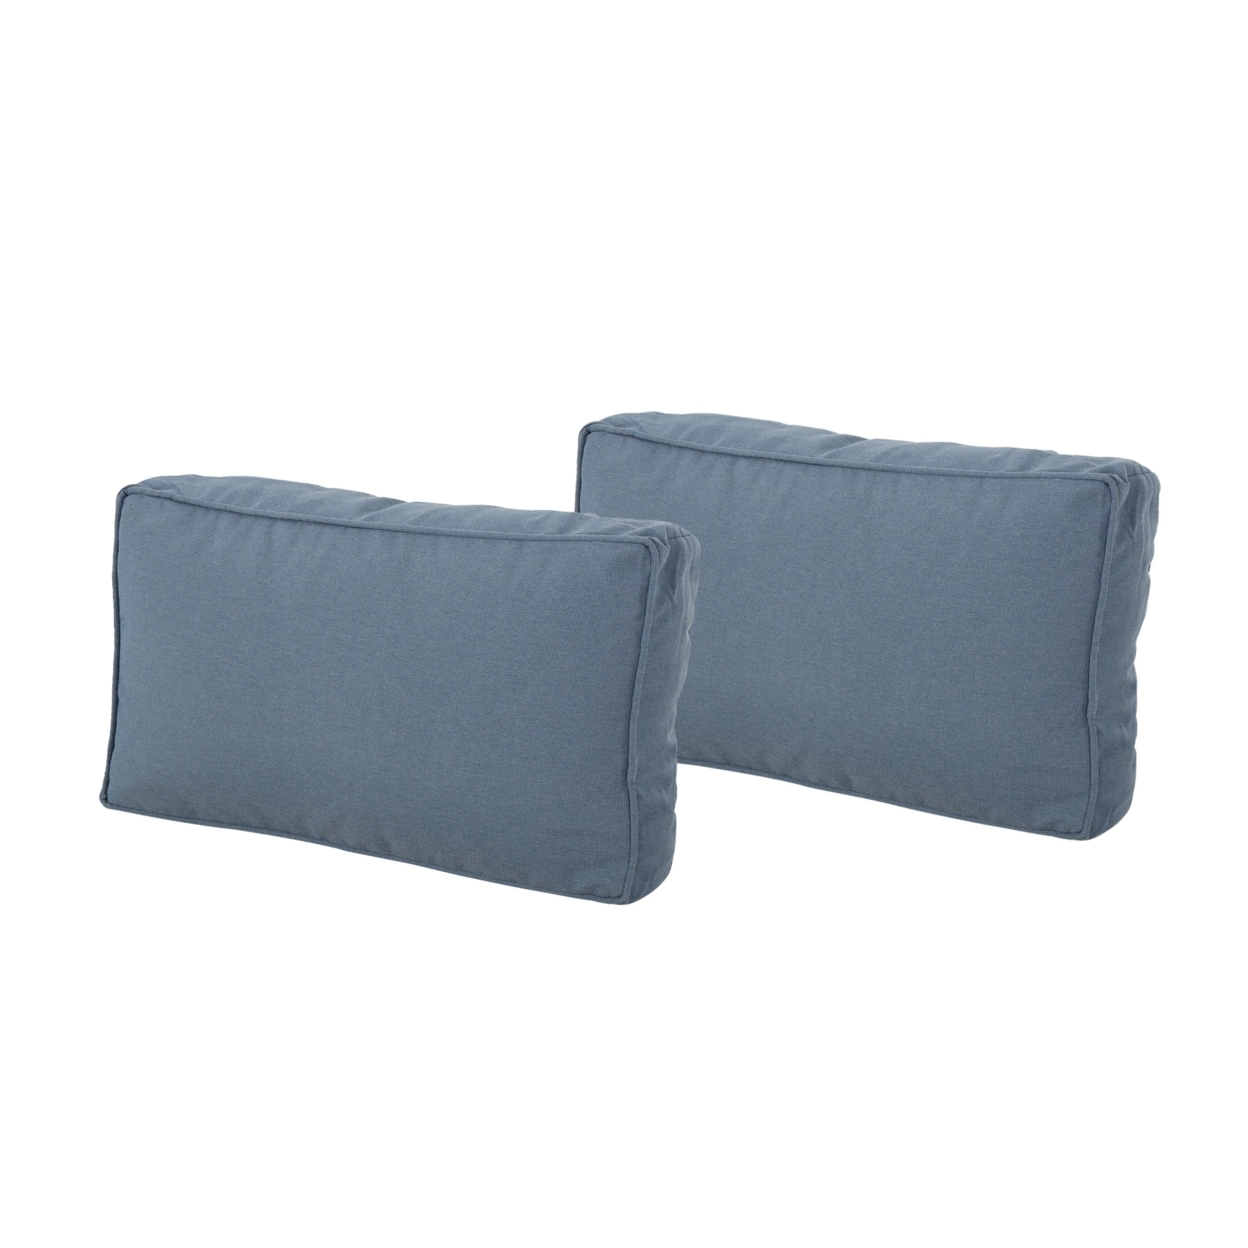 Kimani Indoor Rectanglular Water Resistant 12x20 Lumbar Pillows - Blue